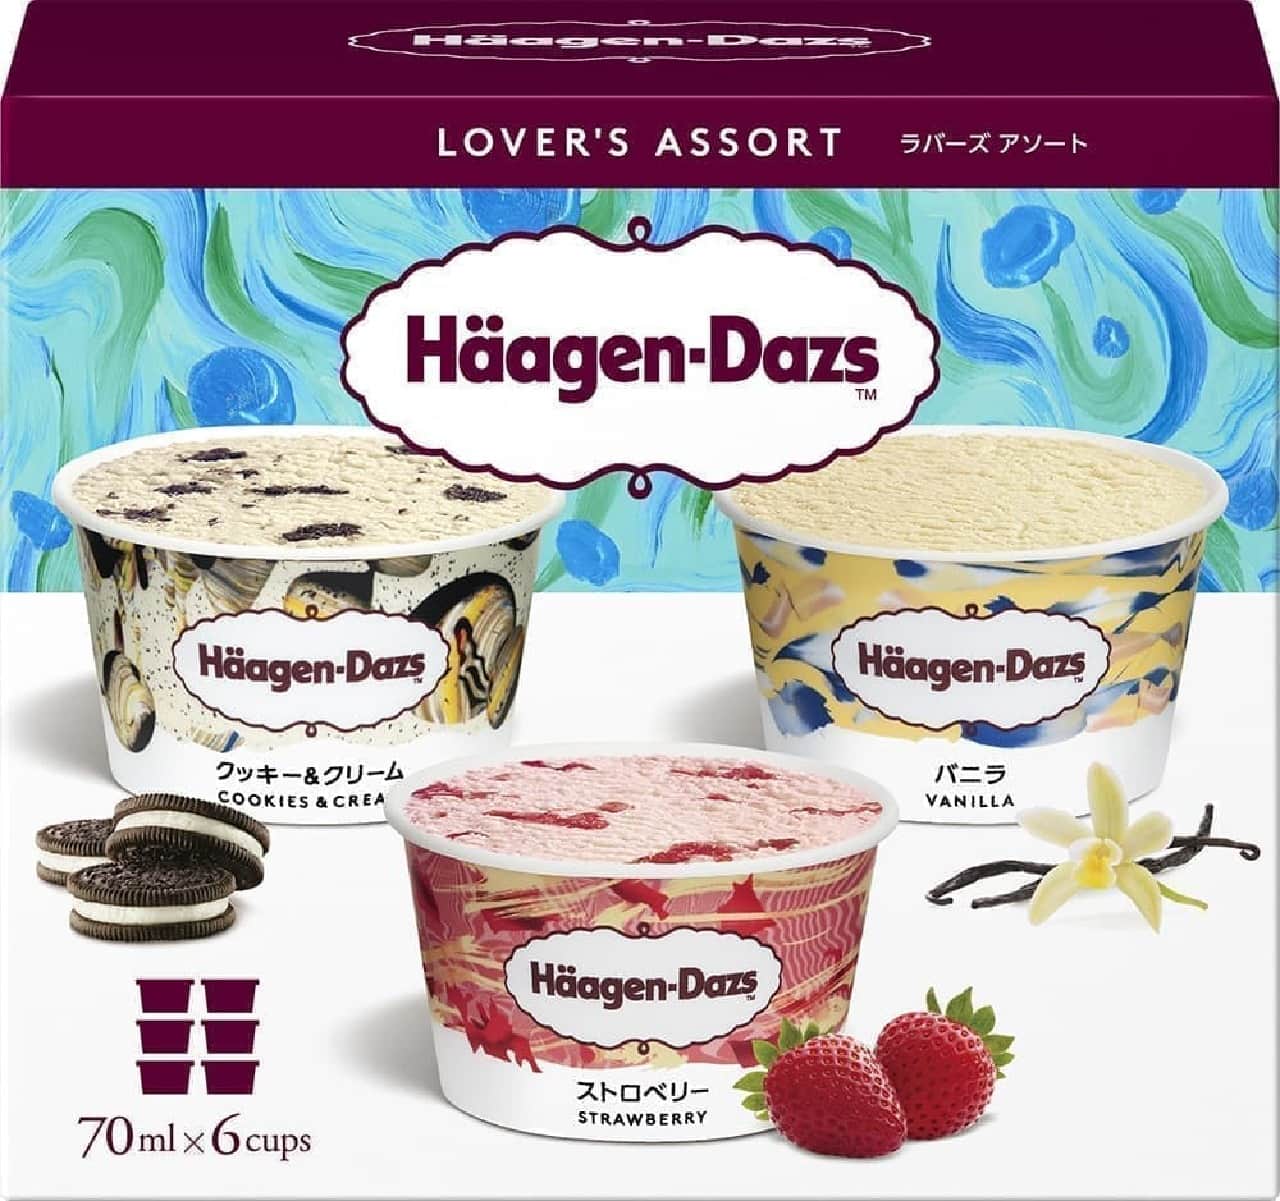 Haagen-Dazs "Lover's Assortment (Vanilla Strawberry Cookies & Cream)"